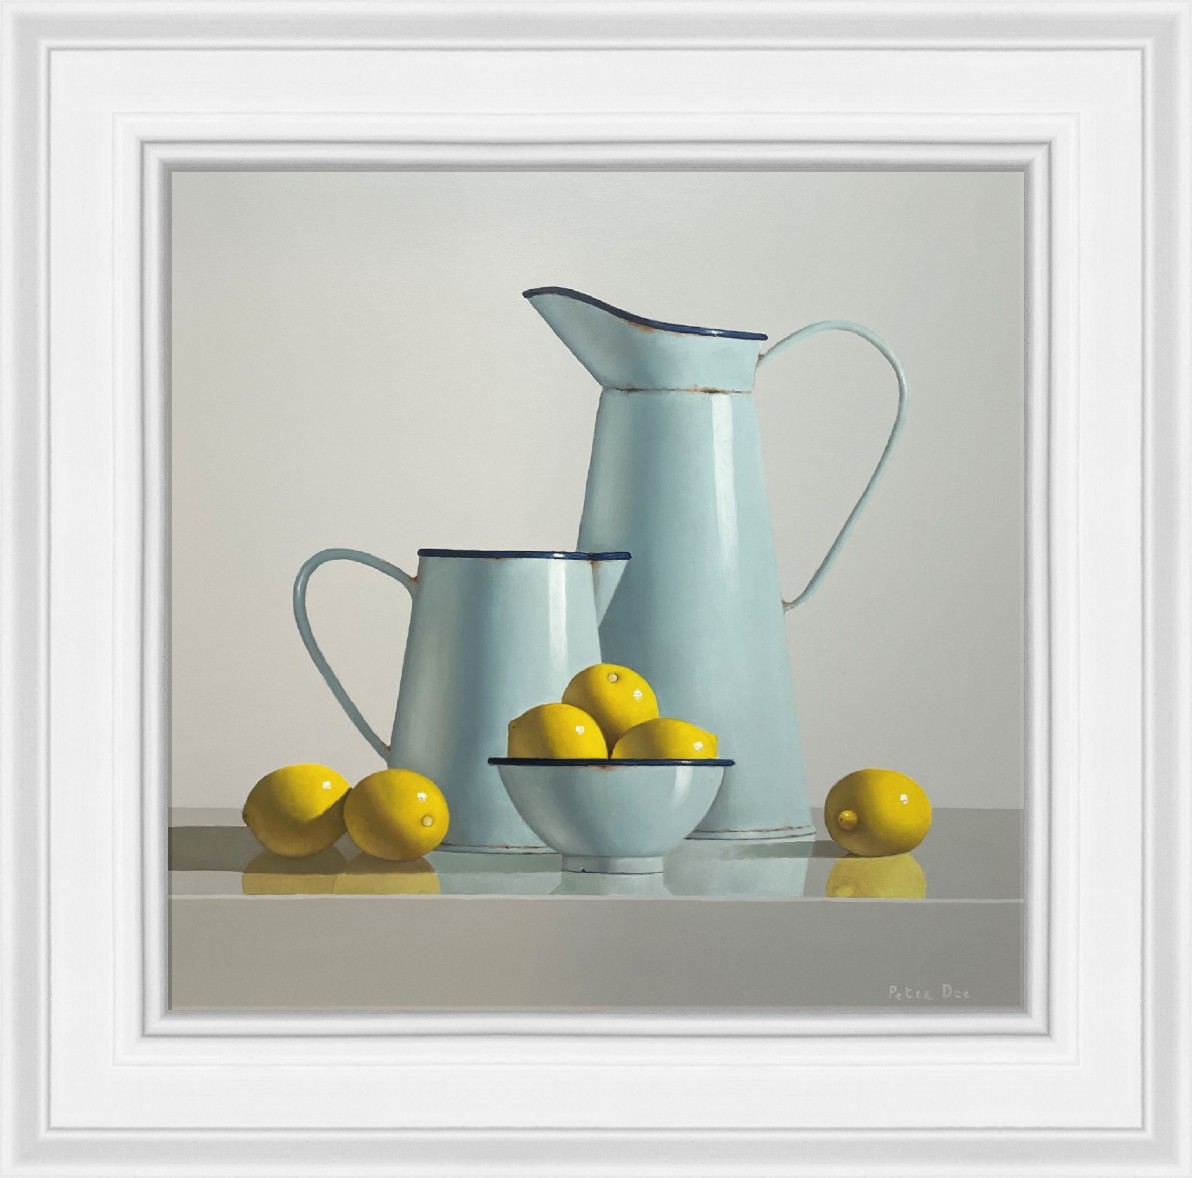 Vintage Enamelware with Lemons by Peter Dee